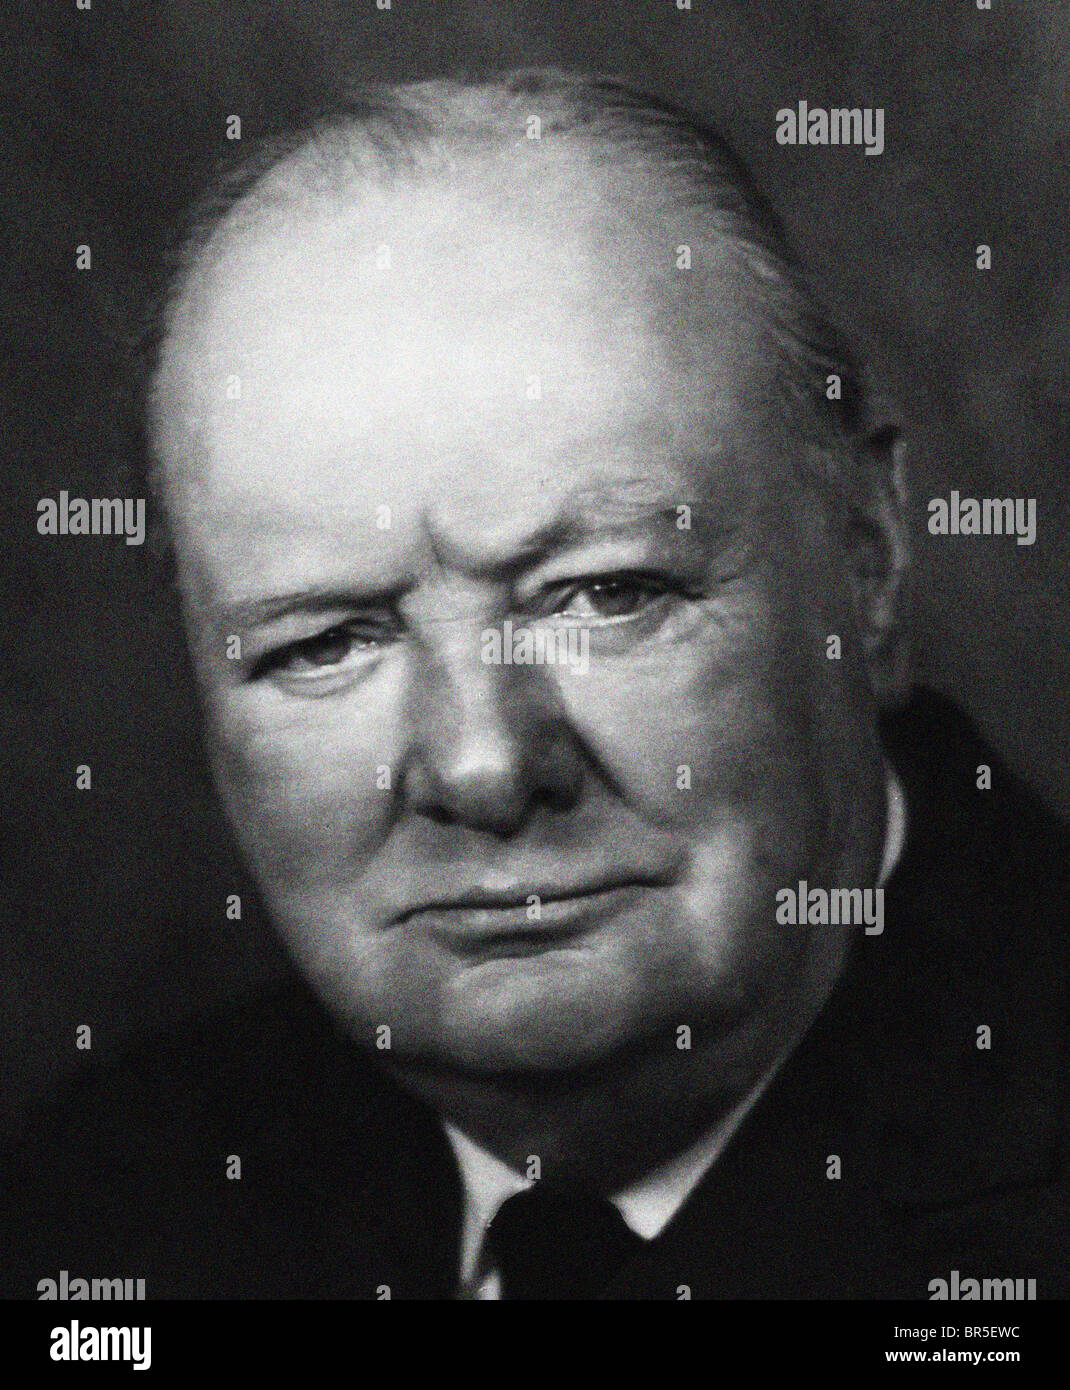 Winston Churchill war ein Politiker und Premierminister während des Krieges der Großbritannien zum Sieg im zweiten Weltkrieg führte. Stockfoto